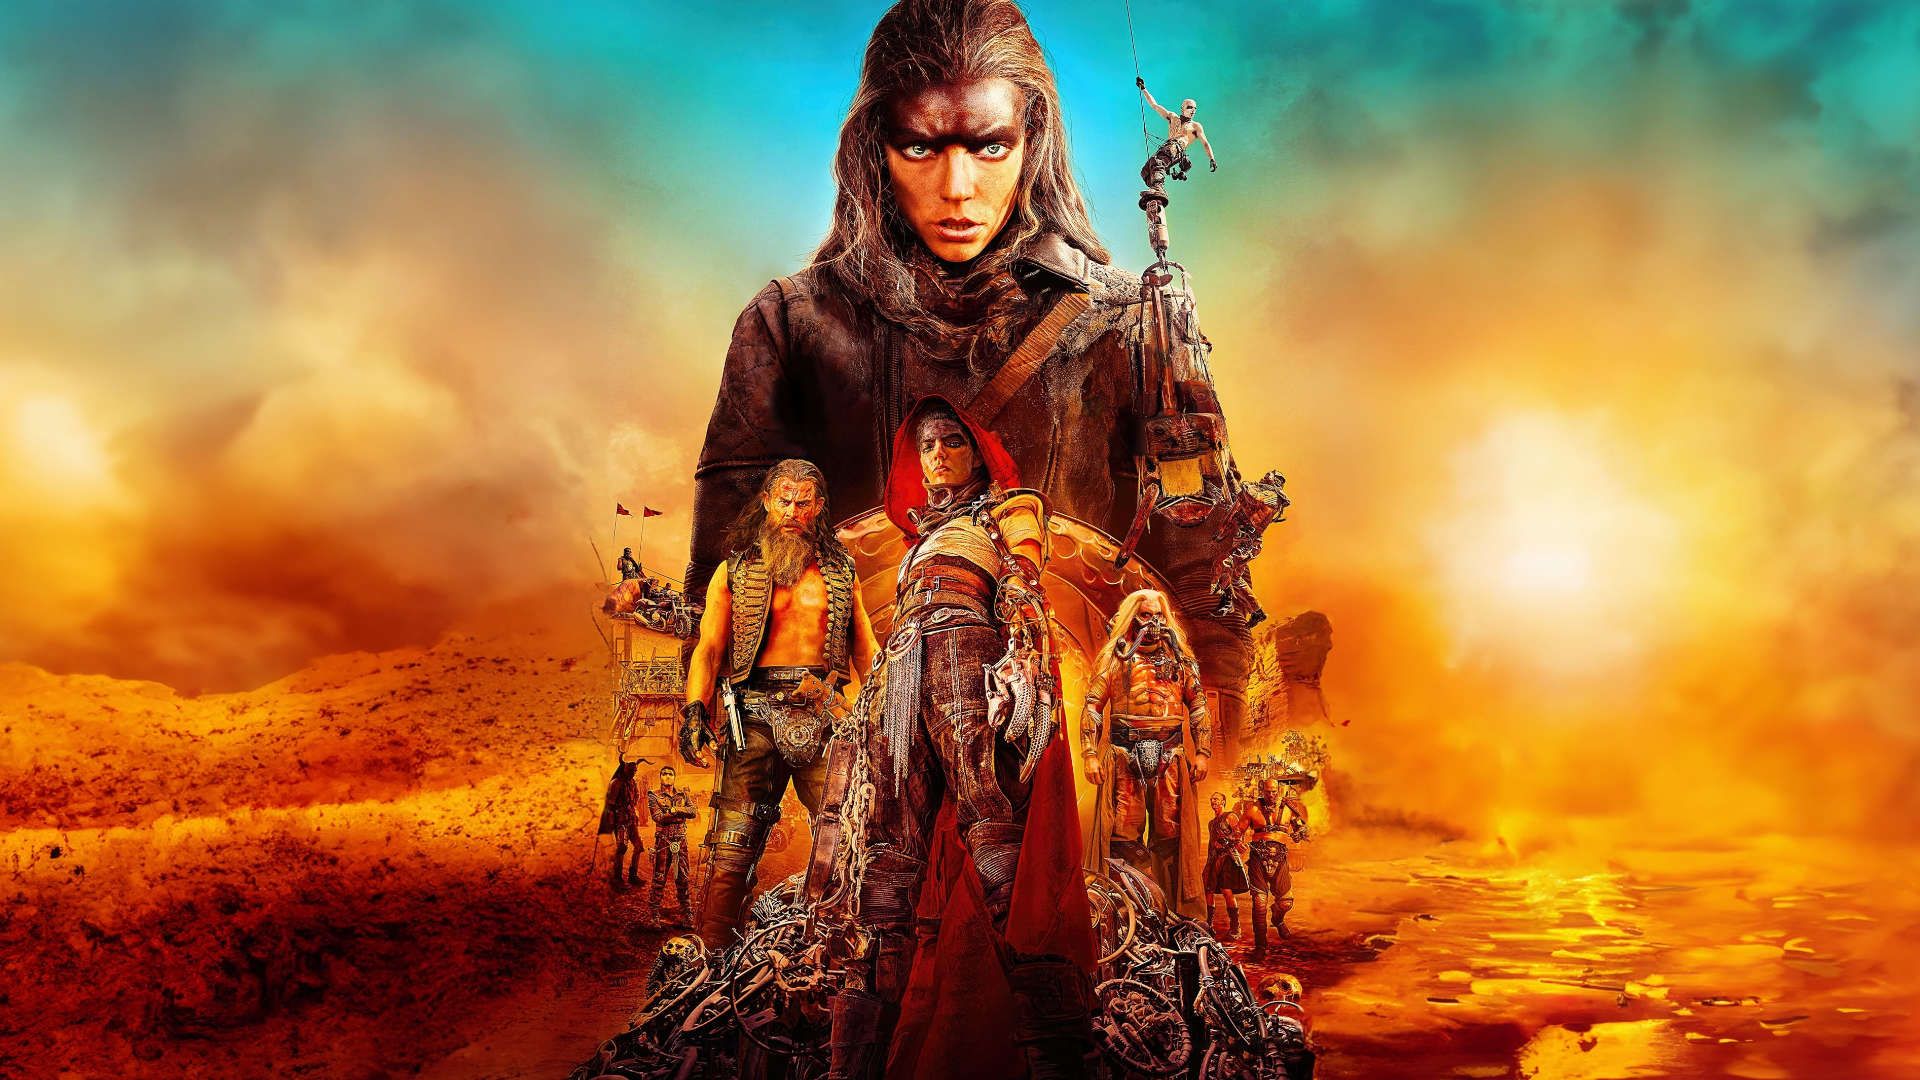 Furiosa: A Mad Max Saga background